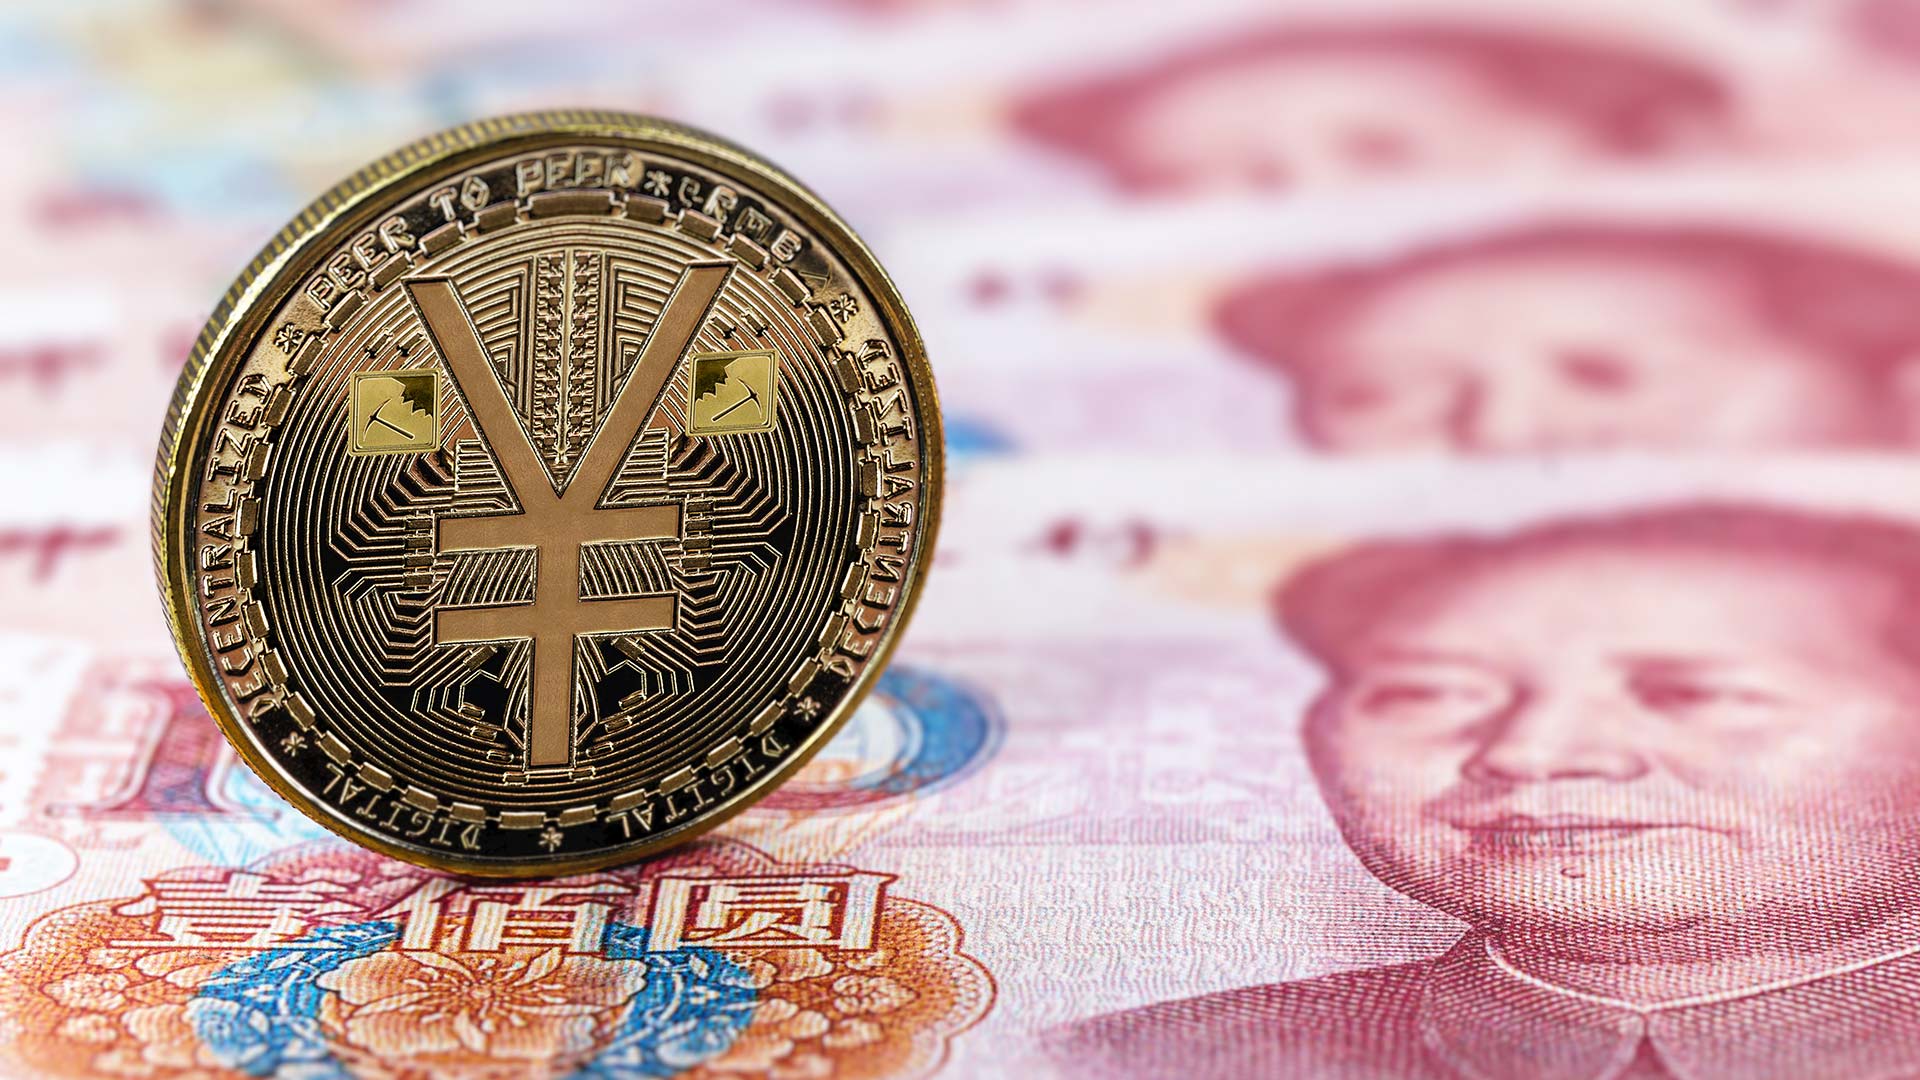 Digital Yuan coin on Yuan notes